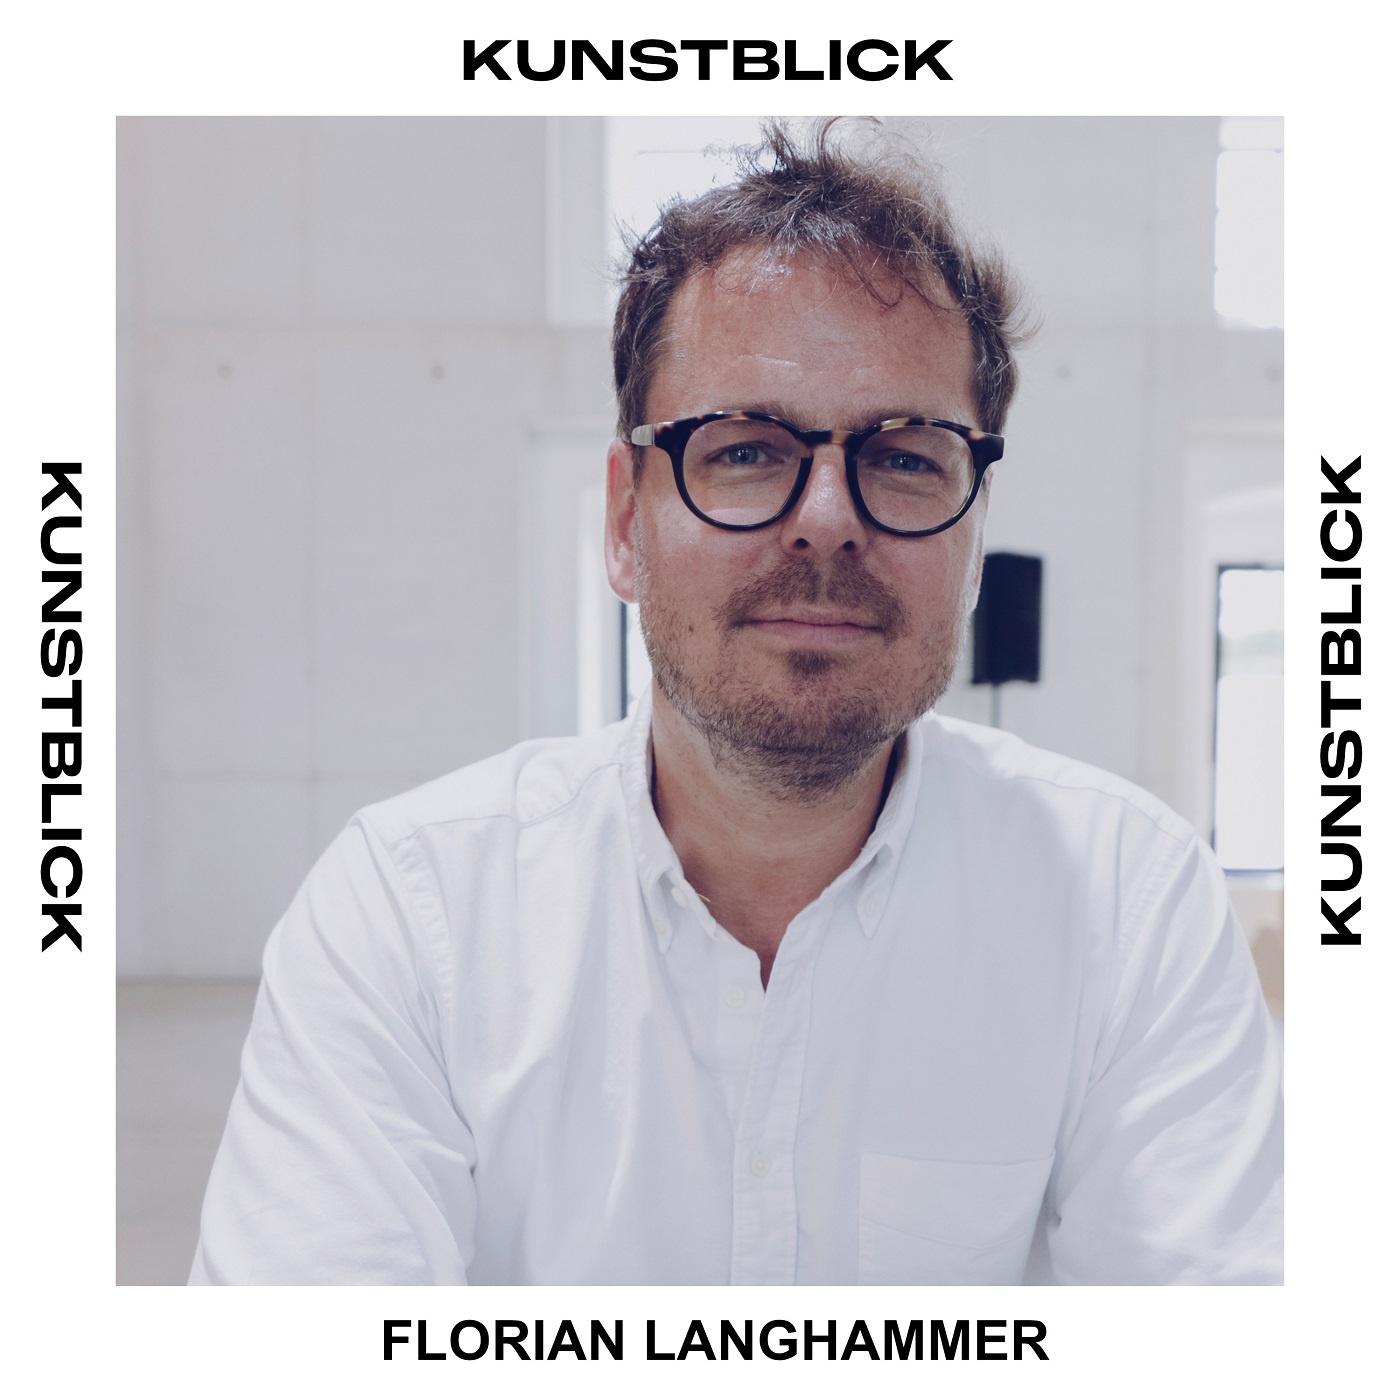 Florian Langhammer - Gründer und Editor in Chief von Collectors Agenda